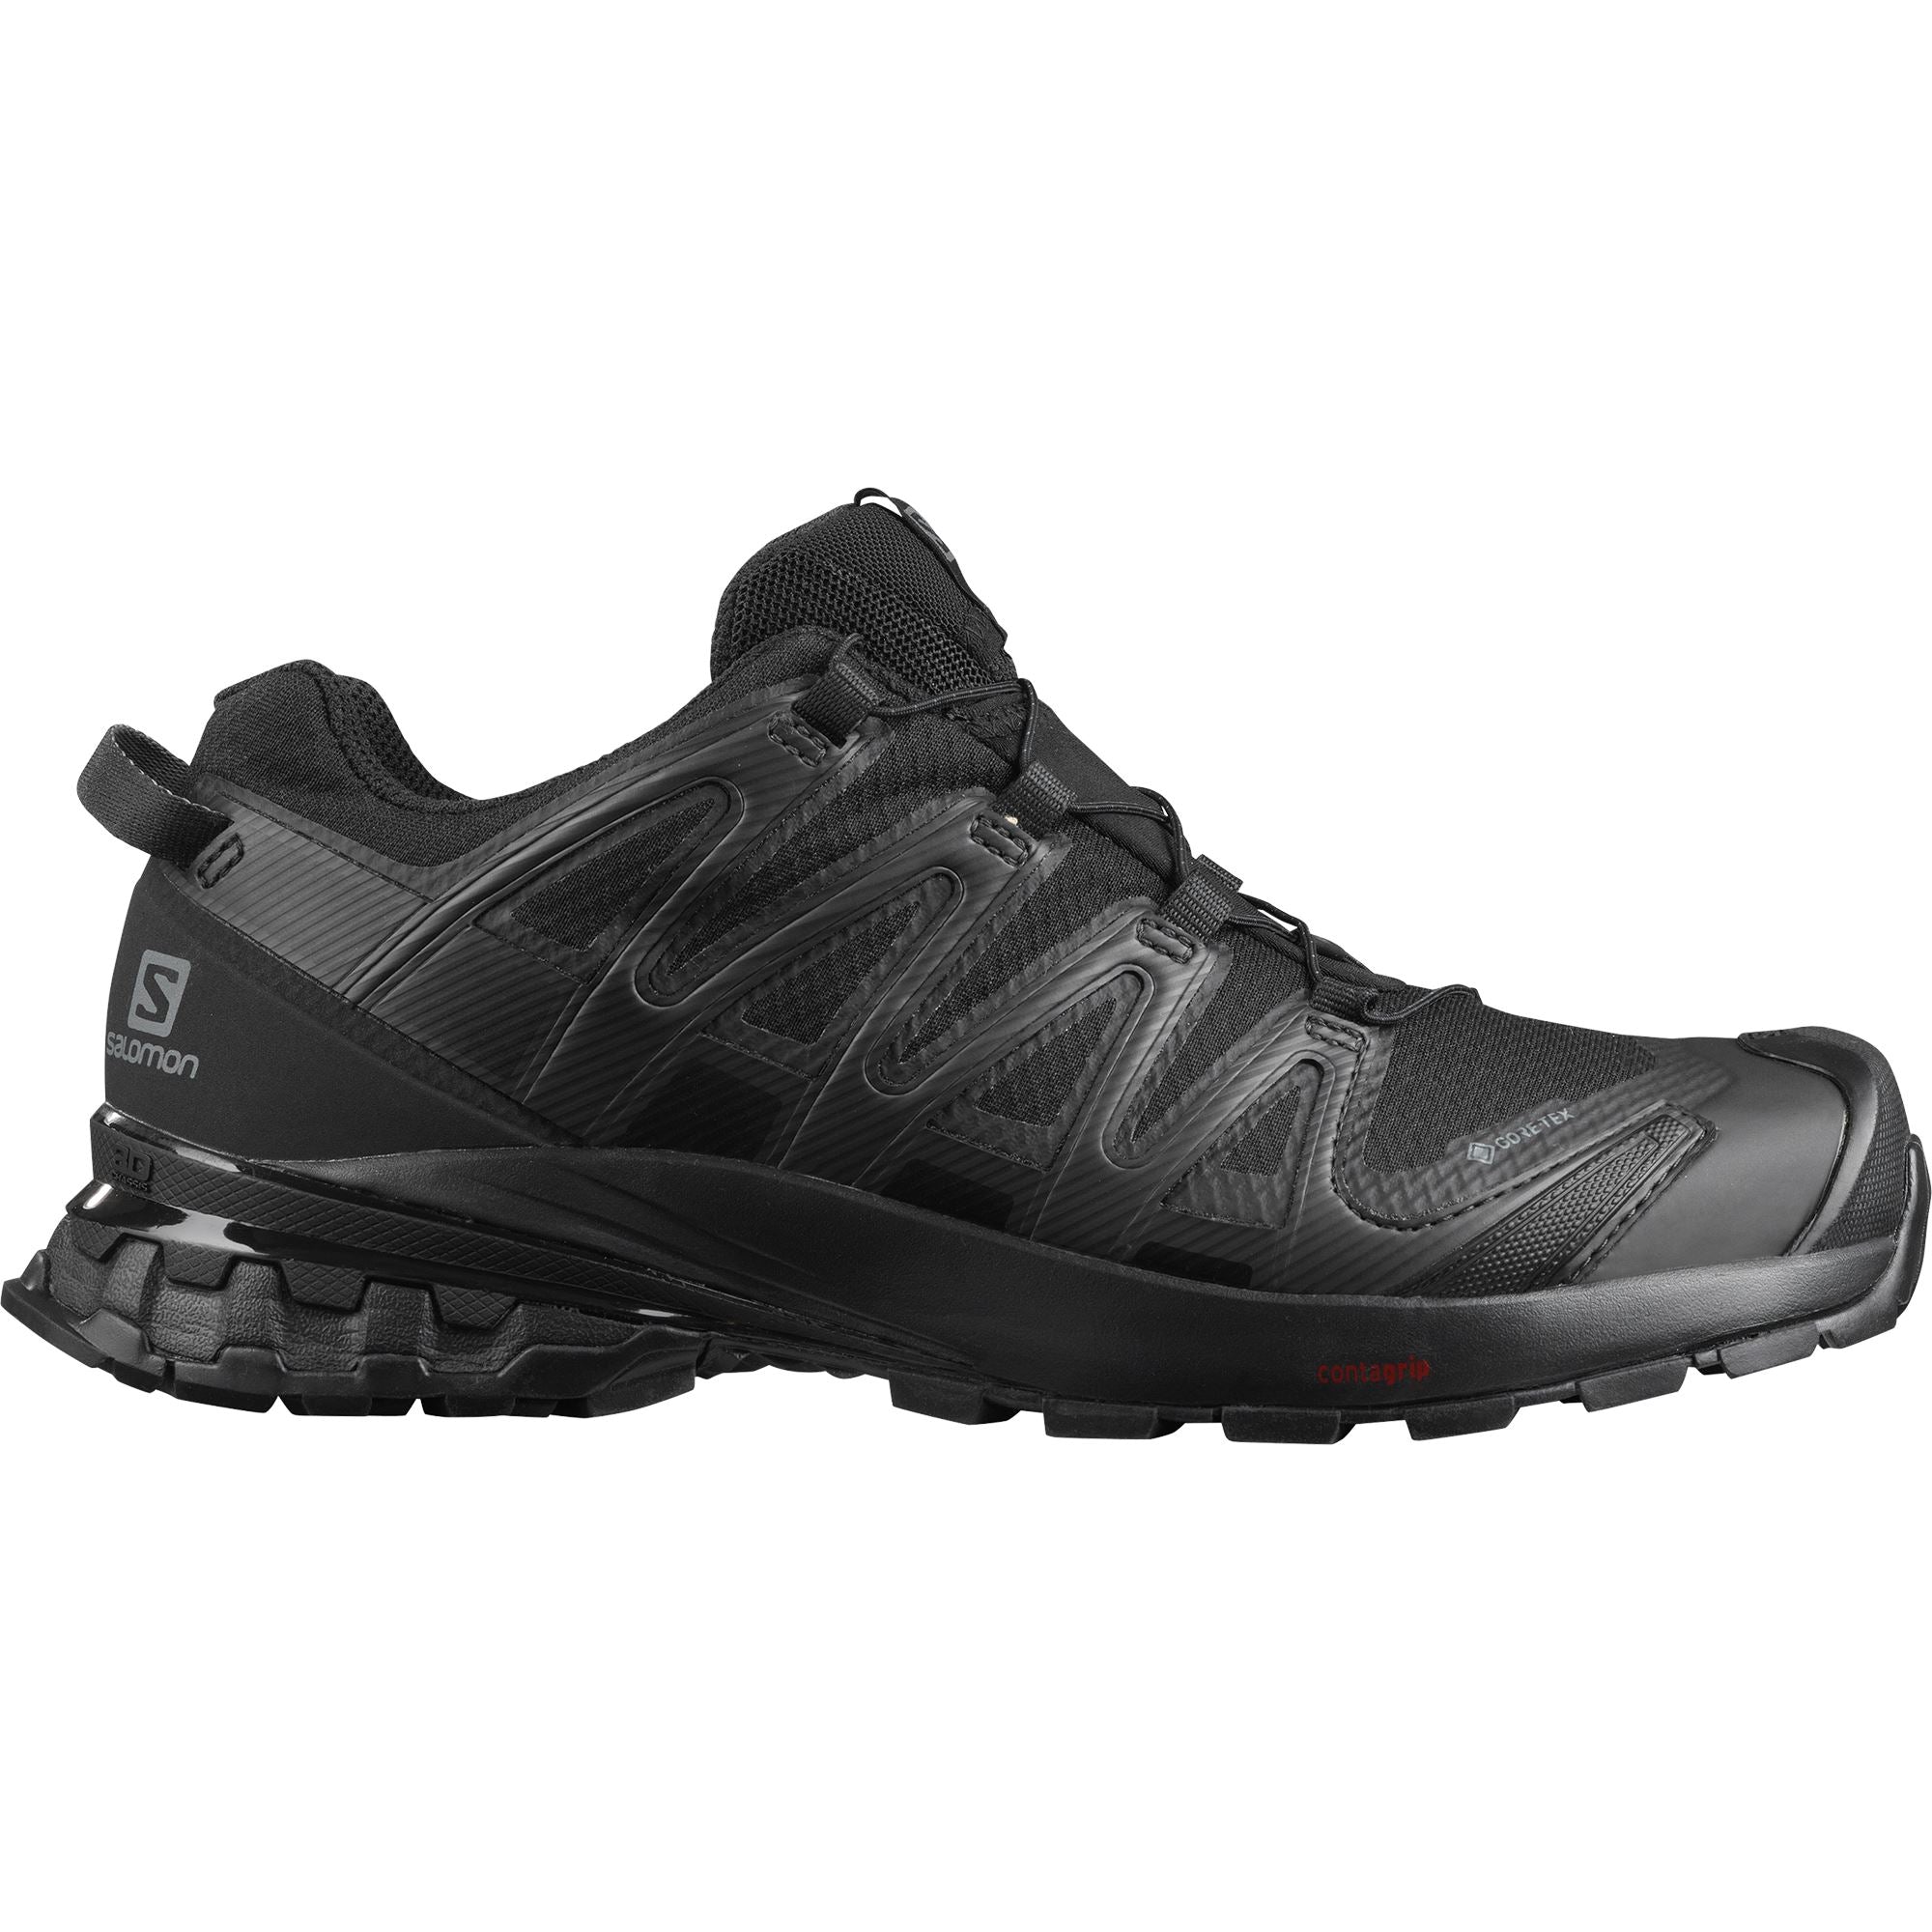 Salomon XA Pro 3D V8 GTX Women's Trail Running Shoes Black/Black/Phantom US 6 